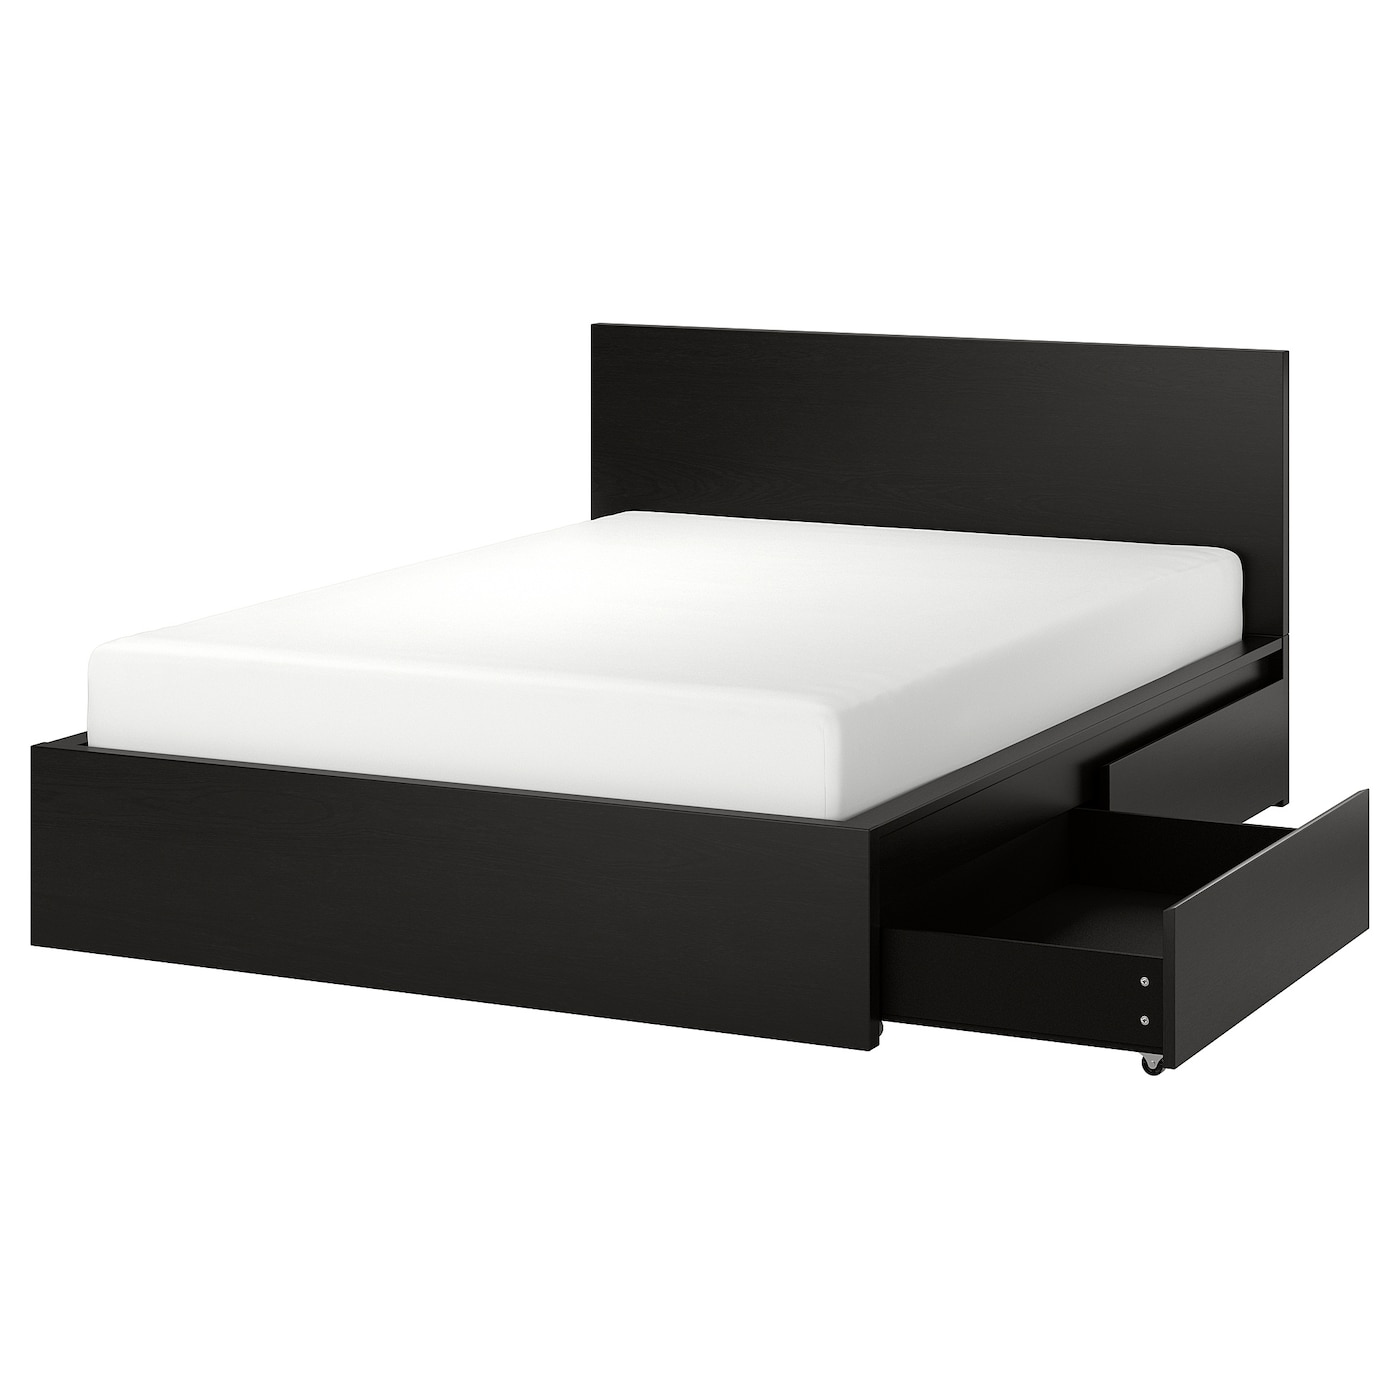 Каркас кровати с 2 ящиками для хранения - IKEA MALM, 200х160 см, черный, МАЛЬМ ИКЕА